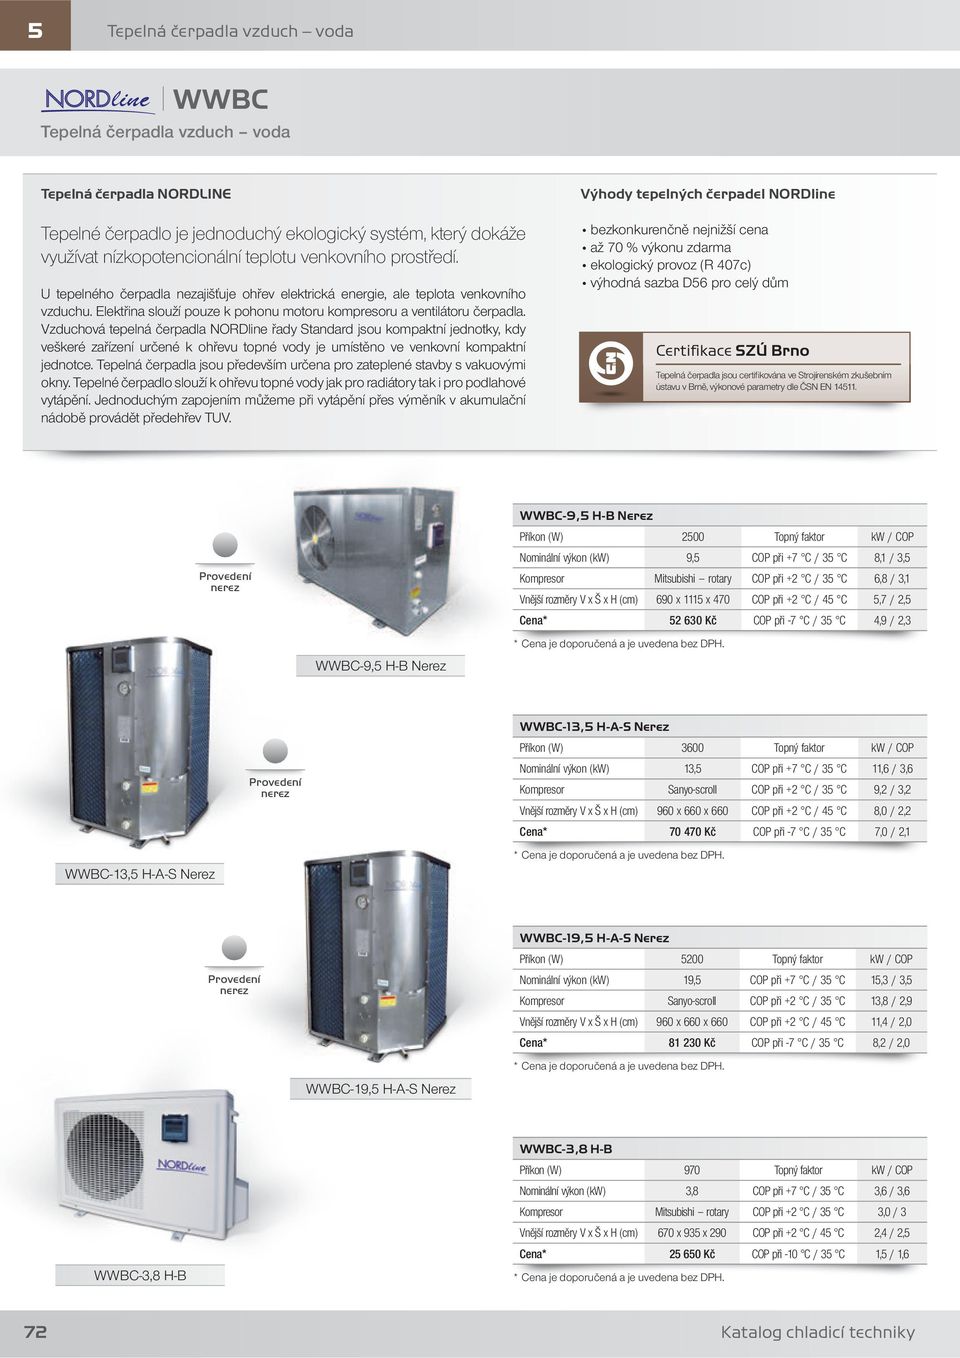 Vzduchová tepelná čerpadla NORDline řady Standard jsou kompaktní jednotky, kdy veškeré zařízení určené k ohřevu topné vody je umístěno ve venkovní kompaktní jednotce.